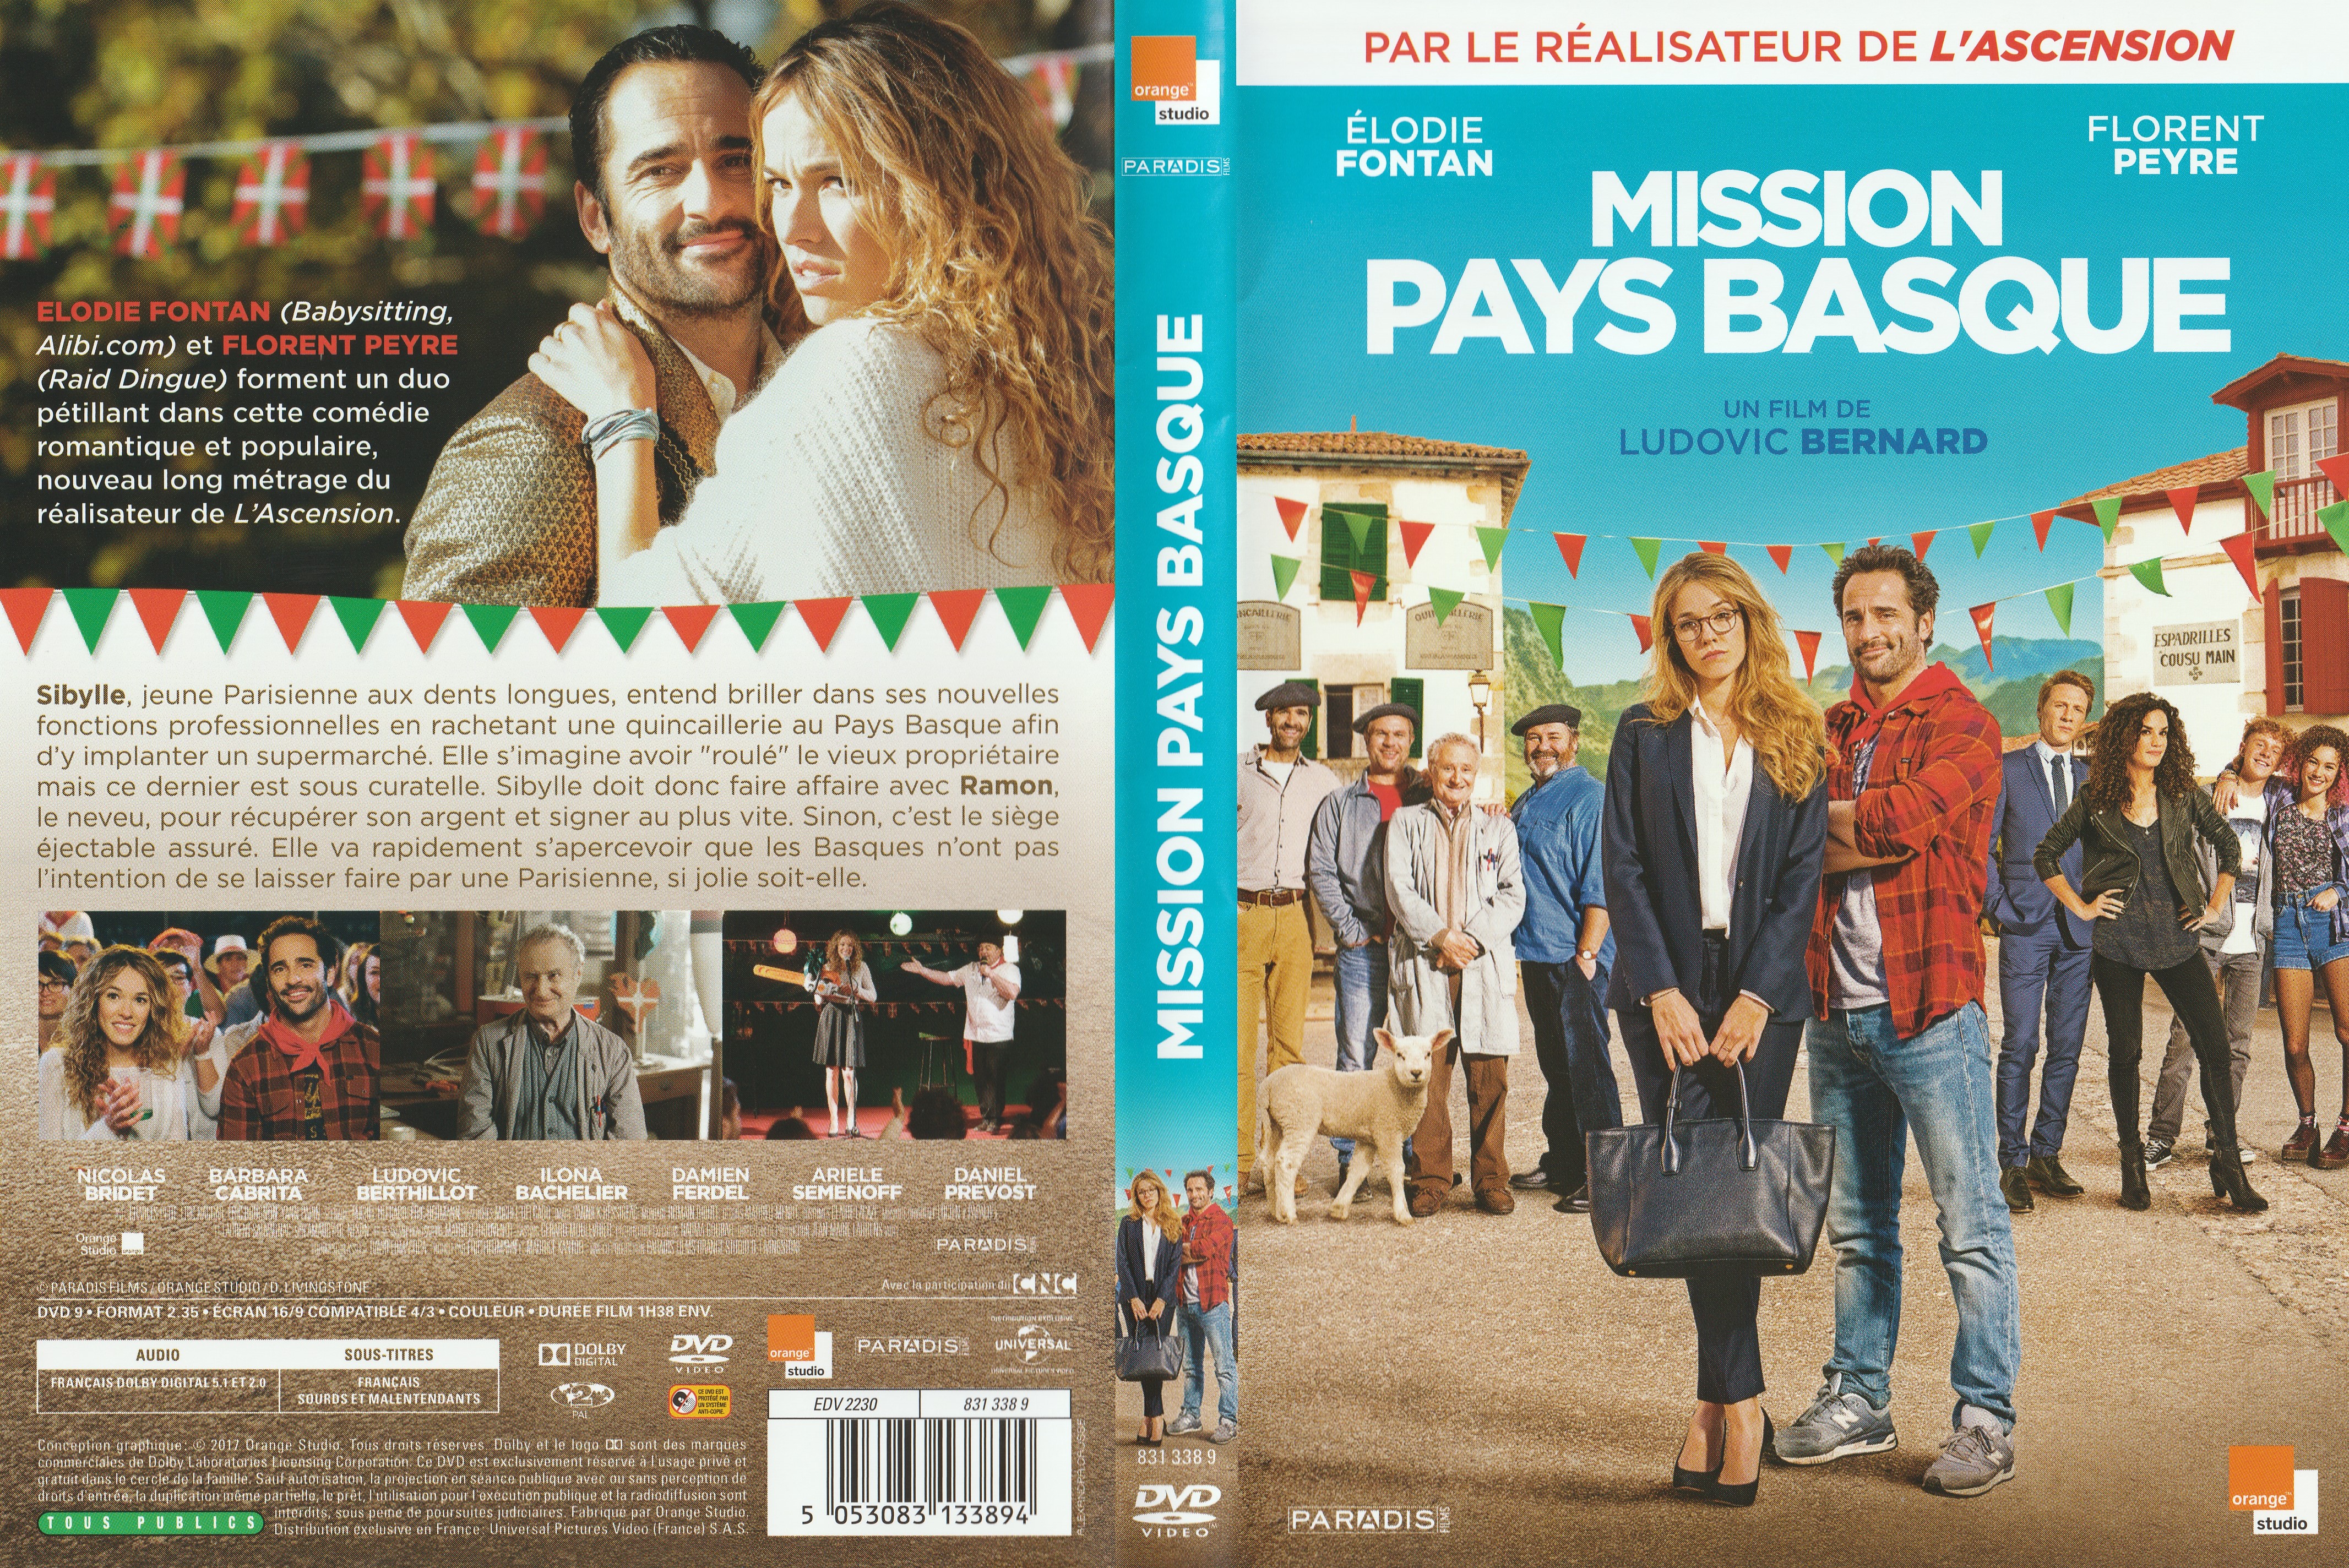 Jaquette DVD Mission pays basque